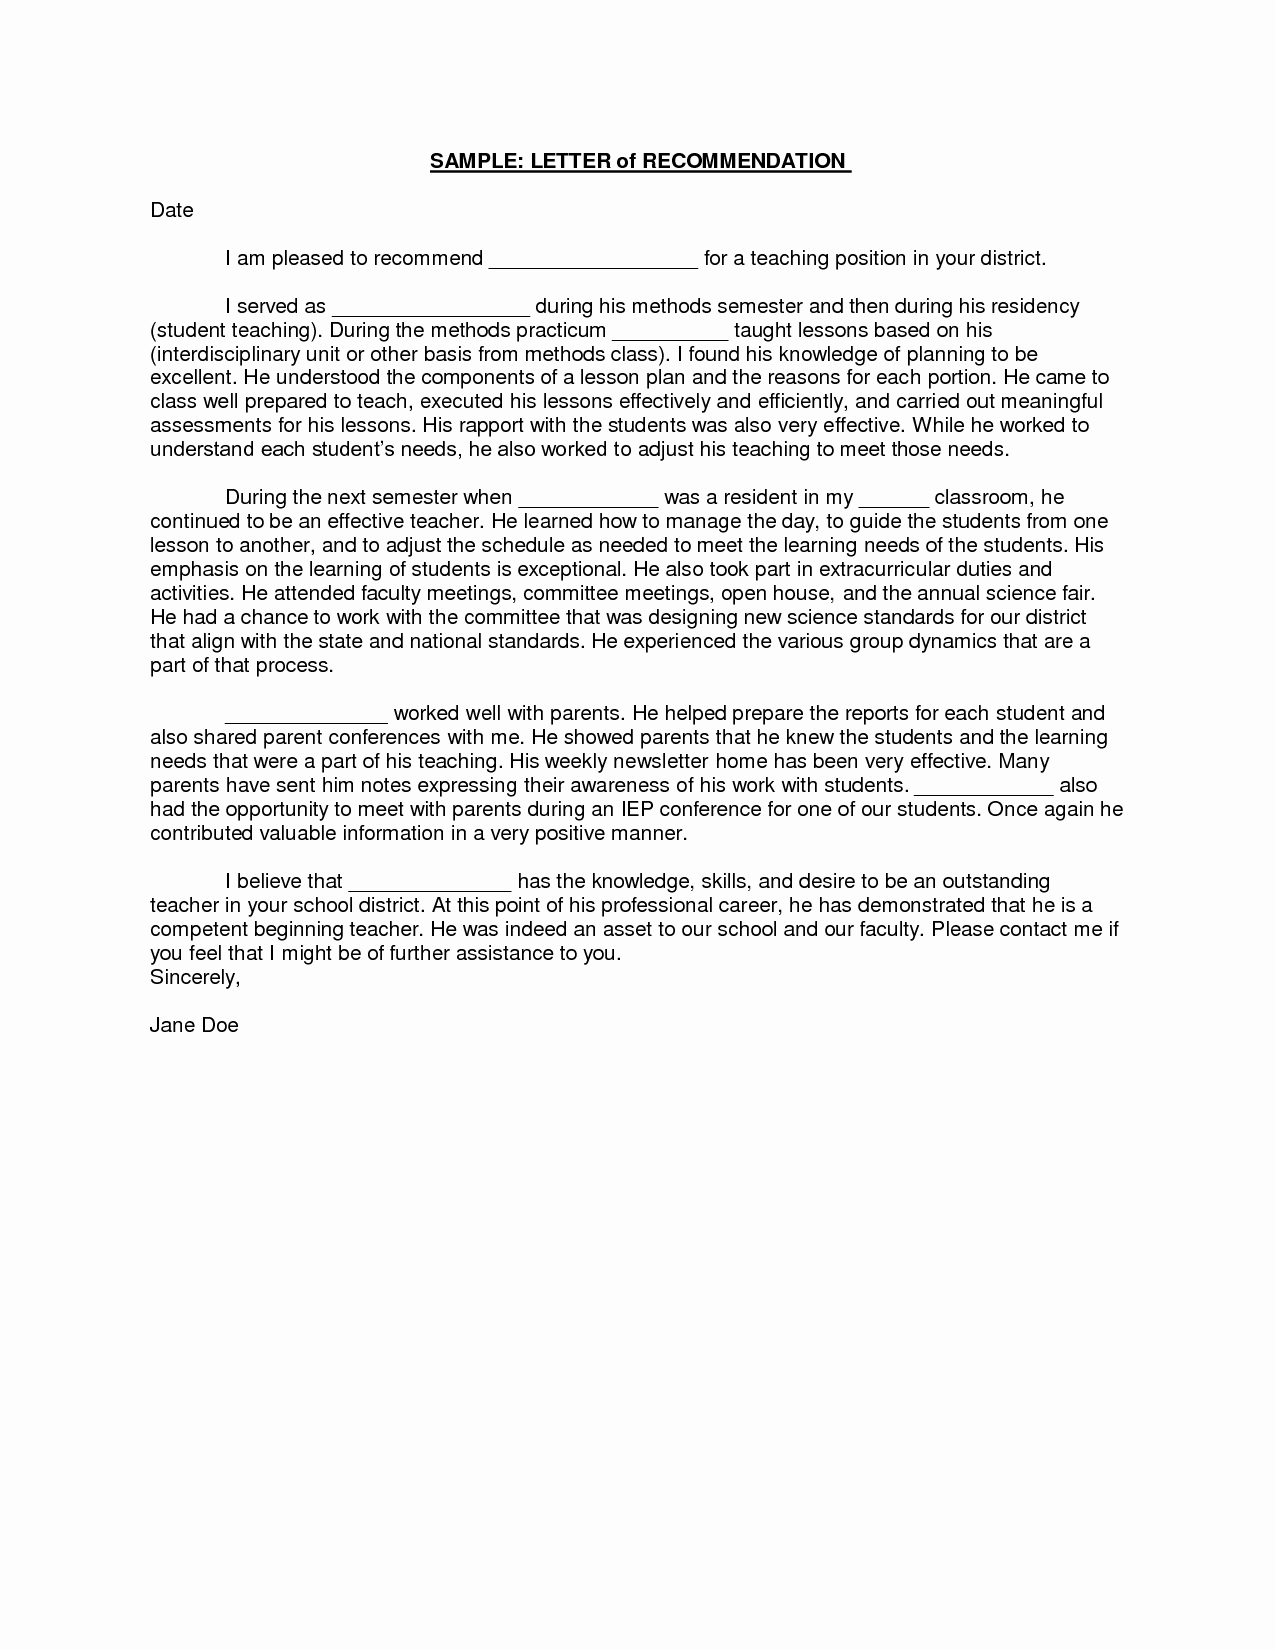 Education Letter Of Recommendation Lovely Sample Student Teacher Re Mendation Letters V9nqmvof